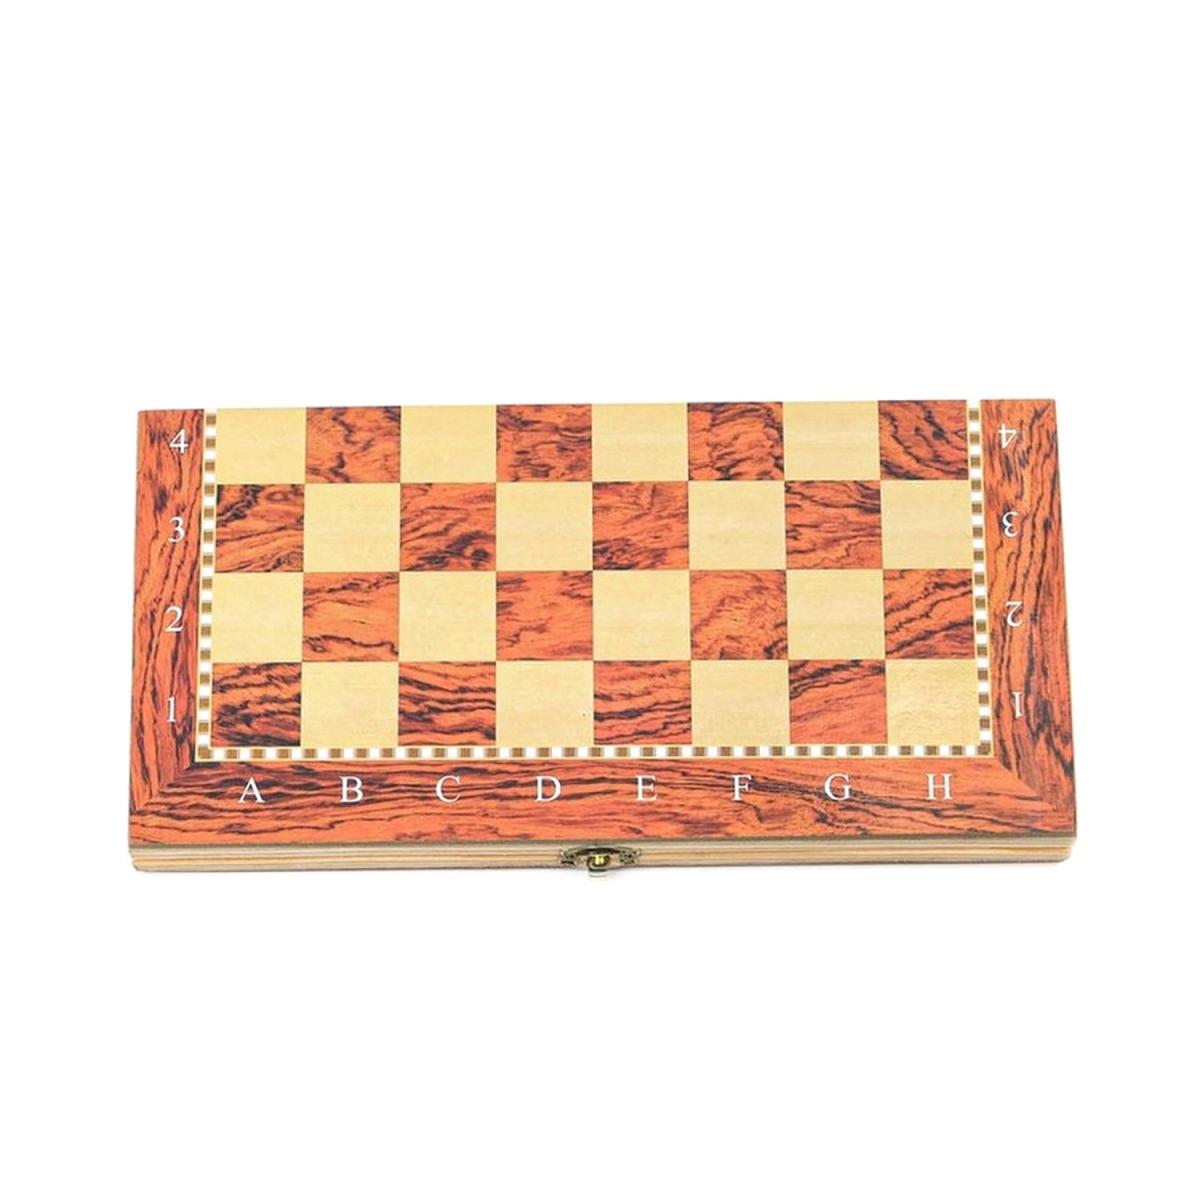 Шахматы деревянные S4030 "39.5x38 см"